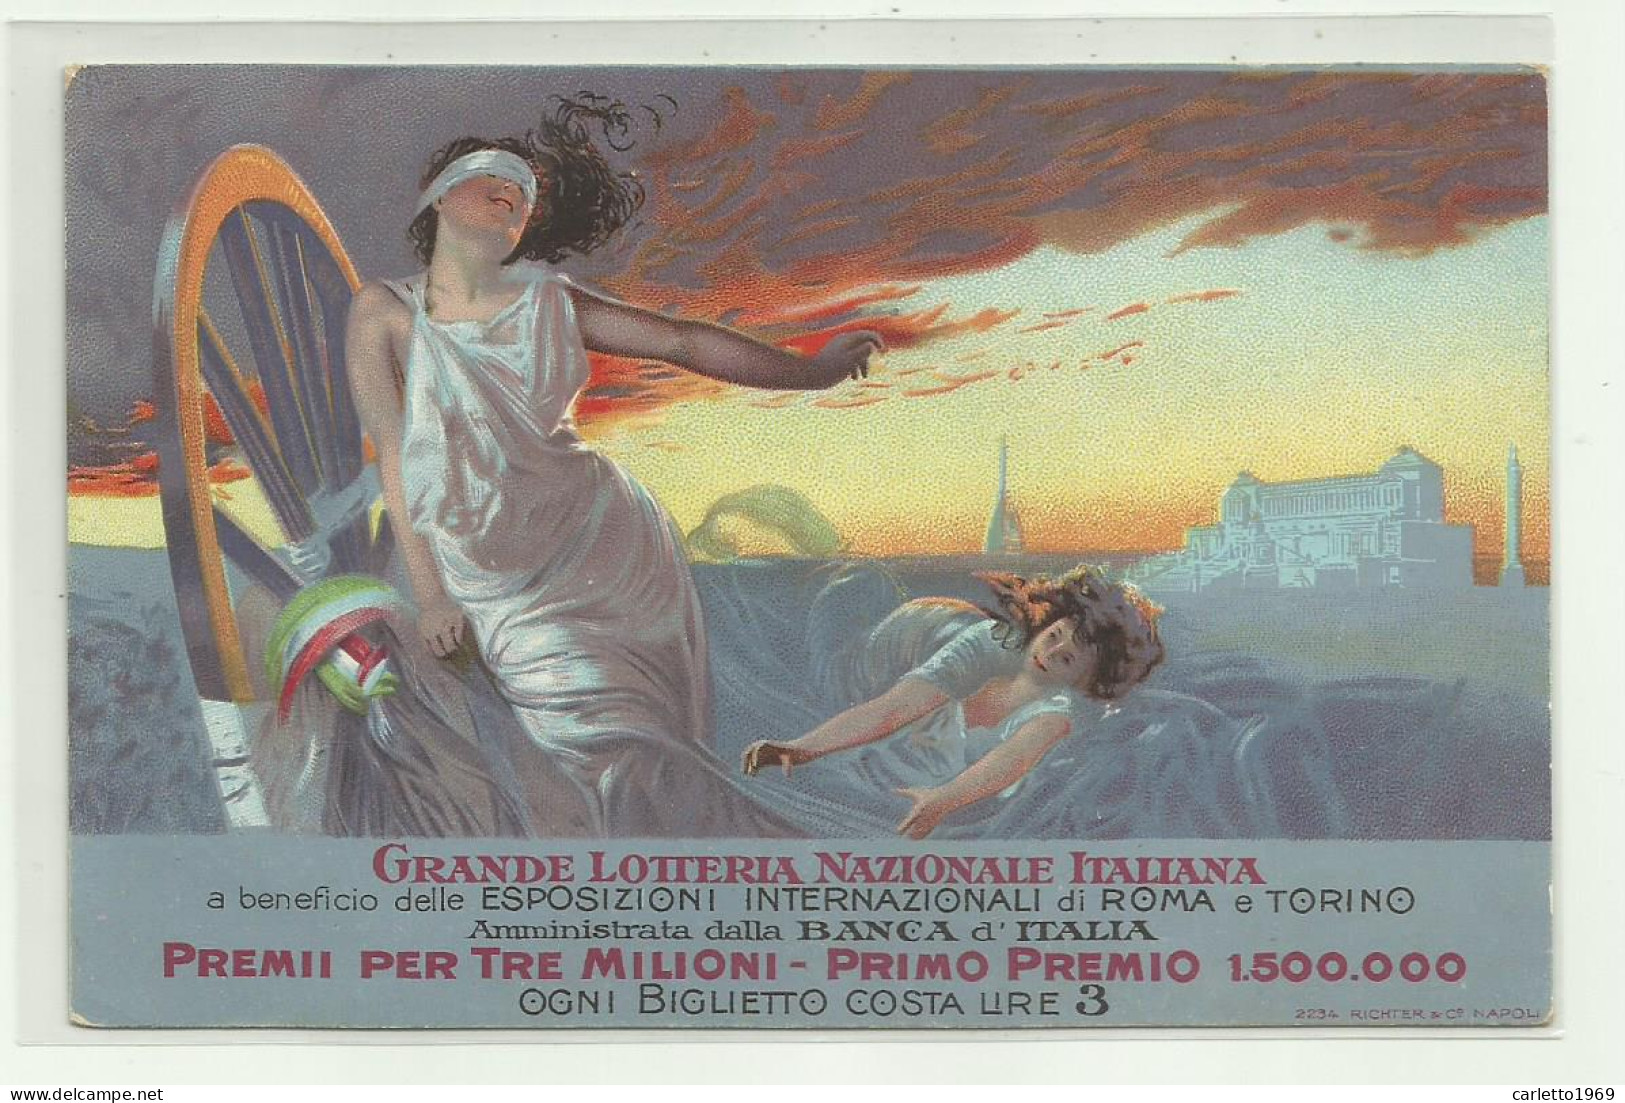 GRANDE LOTTERIA NAZIONALE ITALIANA A BENEFICIO DELLE ESPOSIZIONI INERN. DI ROMA E TORINO  - NV FP - Expositions